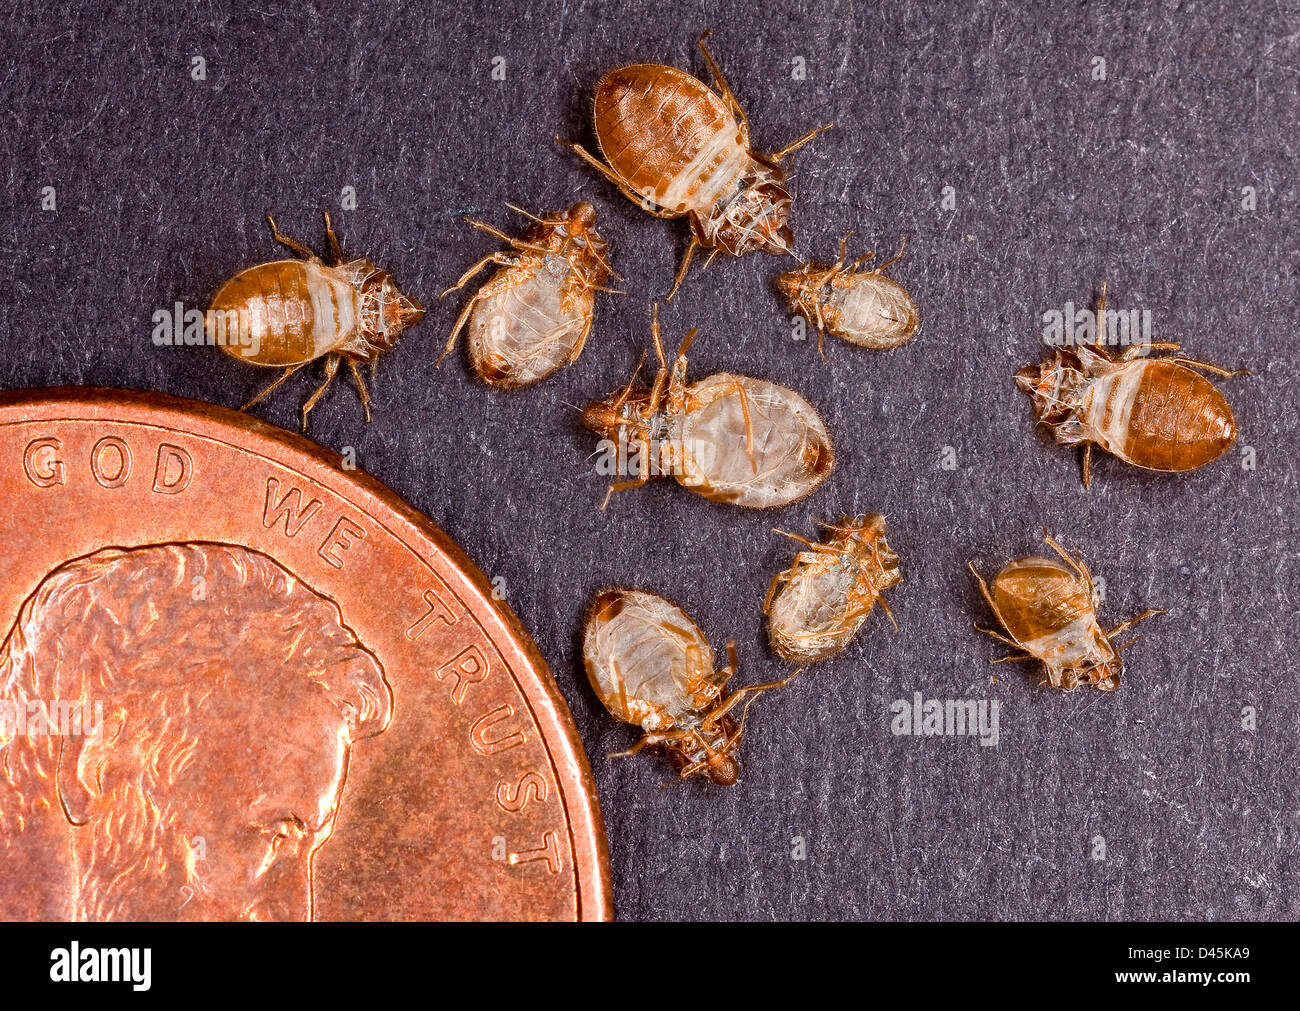 Il soldo in questa foto fornisce un senso di scala per le dimensioni del letto bug pelli raccolti per l'analisi da parte del Ministero dell'Agricoltura degli Stati Uniti gli scienziati Novembre 14, 2012 in Beltsville, MD. Foto Stock